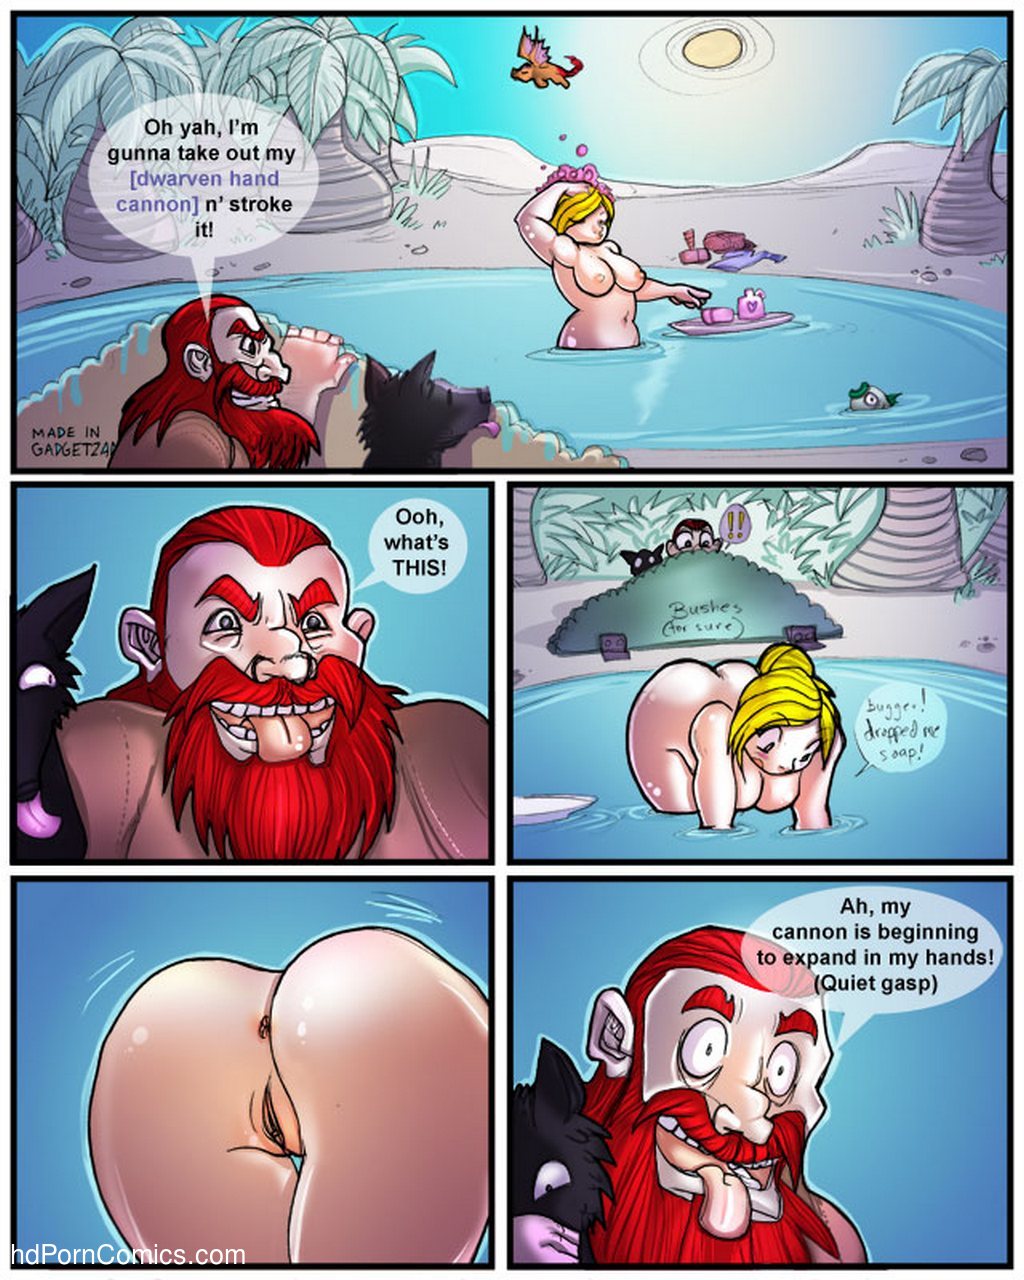 1024px x 1280px - Dwarf vs Dwarf Sex Comic â€“ HD Porn Comics